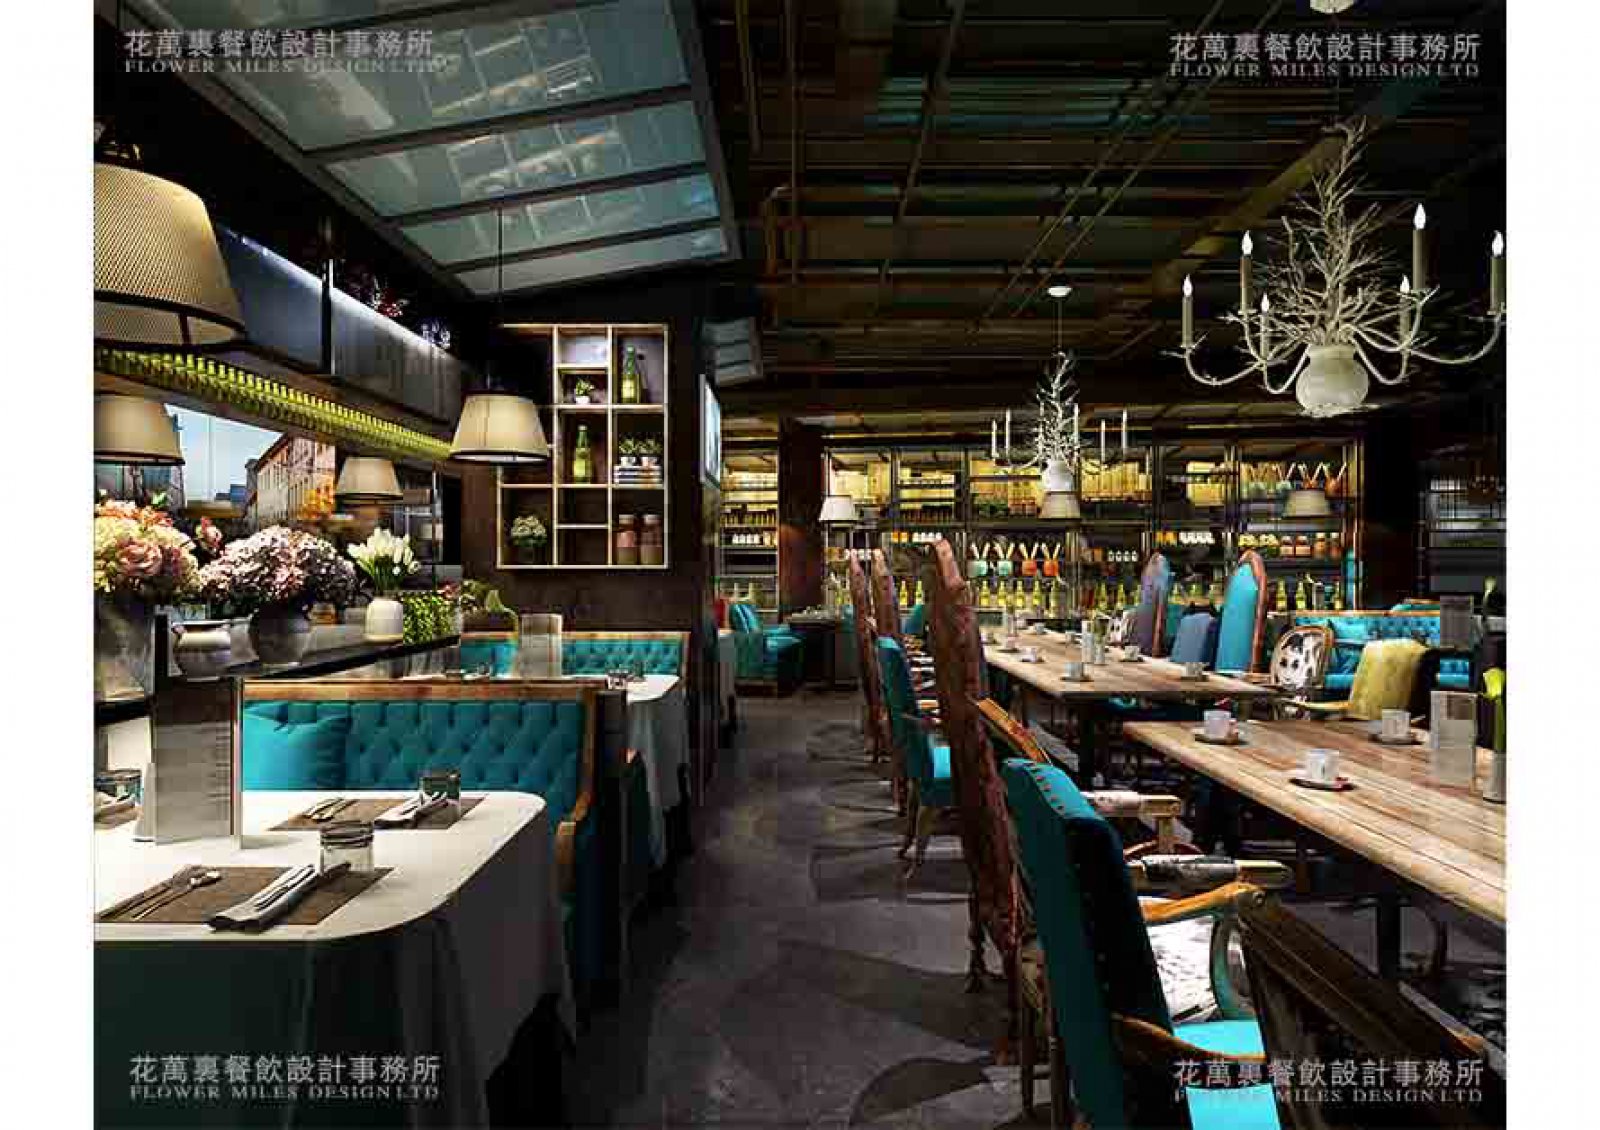 「海洋主题餐厅设计」有哪些需要注意的点？ - 上海蓝湖水族工程